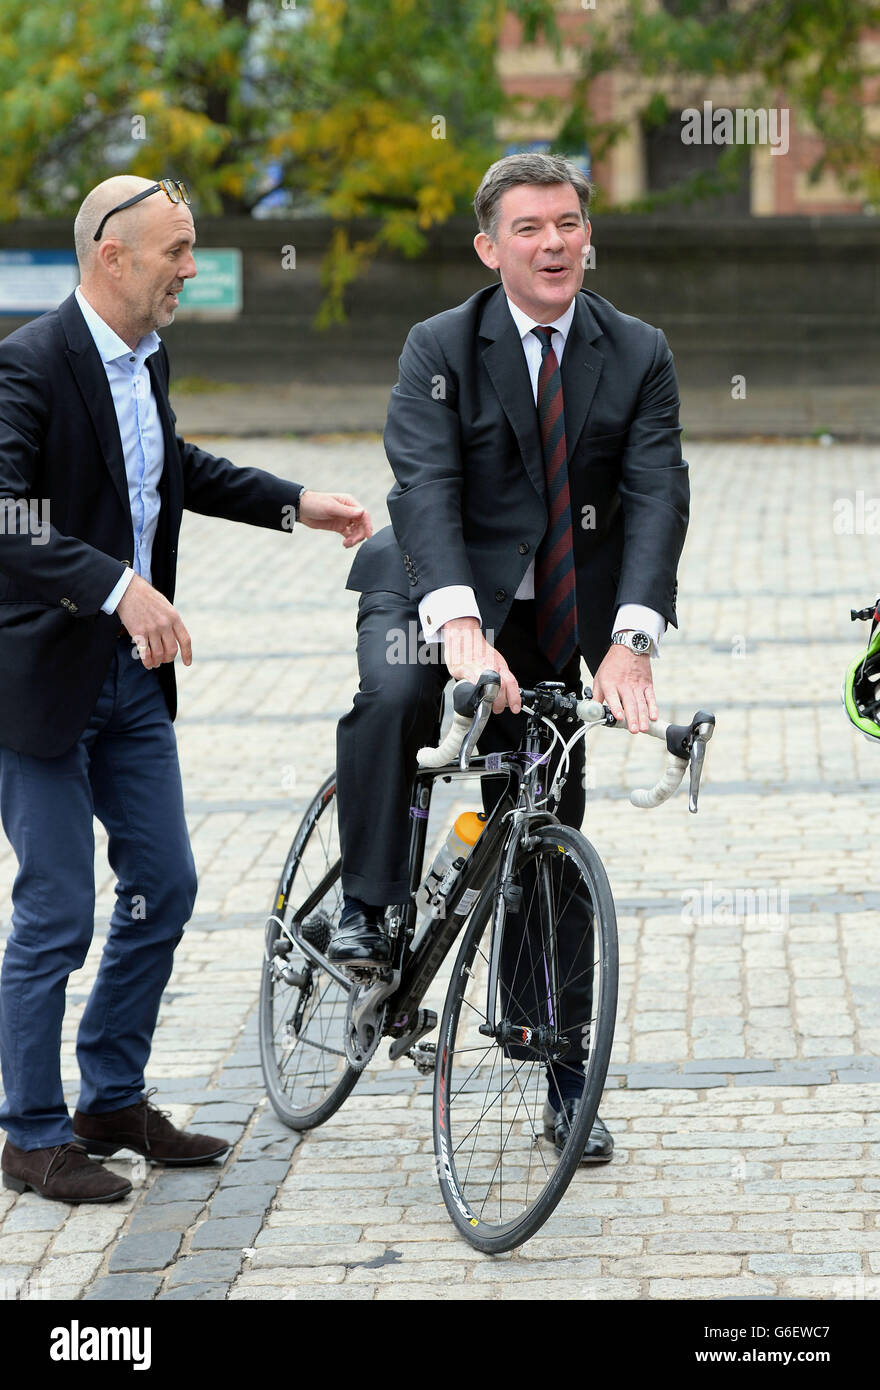 Der Sportminister Hugh Robertson testet bei einer Fotozelle im Rathaus von Leeds ein Rennrad. Der Minister besuchte Leeds und besuchte Personen, die an der Organisation des Grand DEPART der Tour de France beteiligt waren, der im kommenden Juli in der Stadt beginnt. Stockfoto